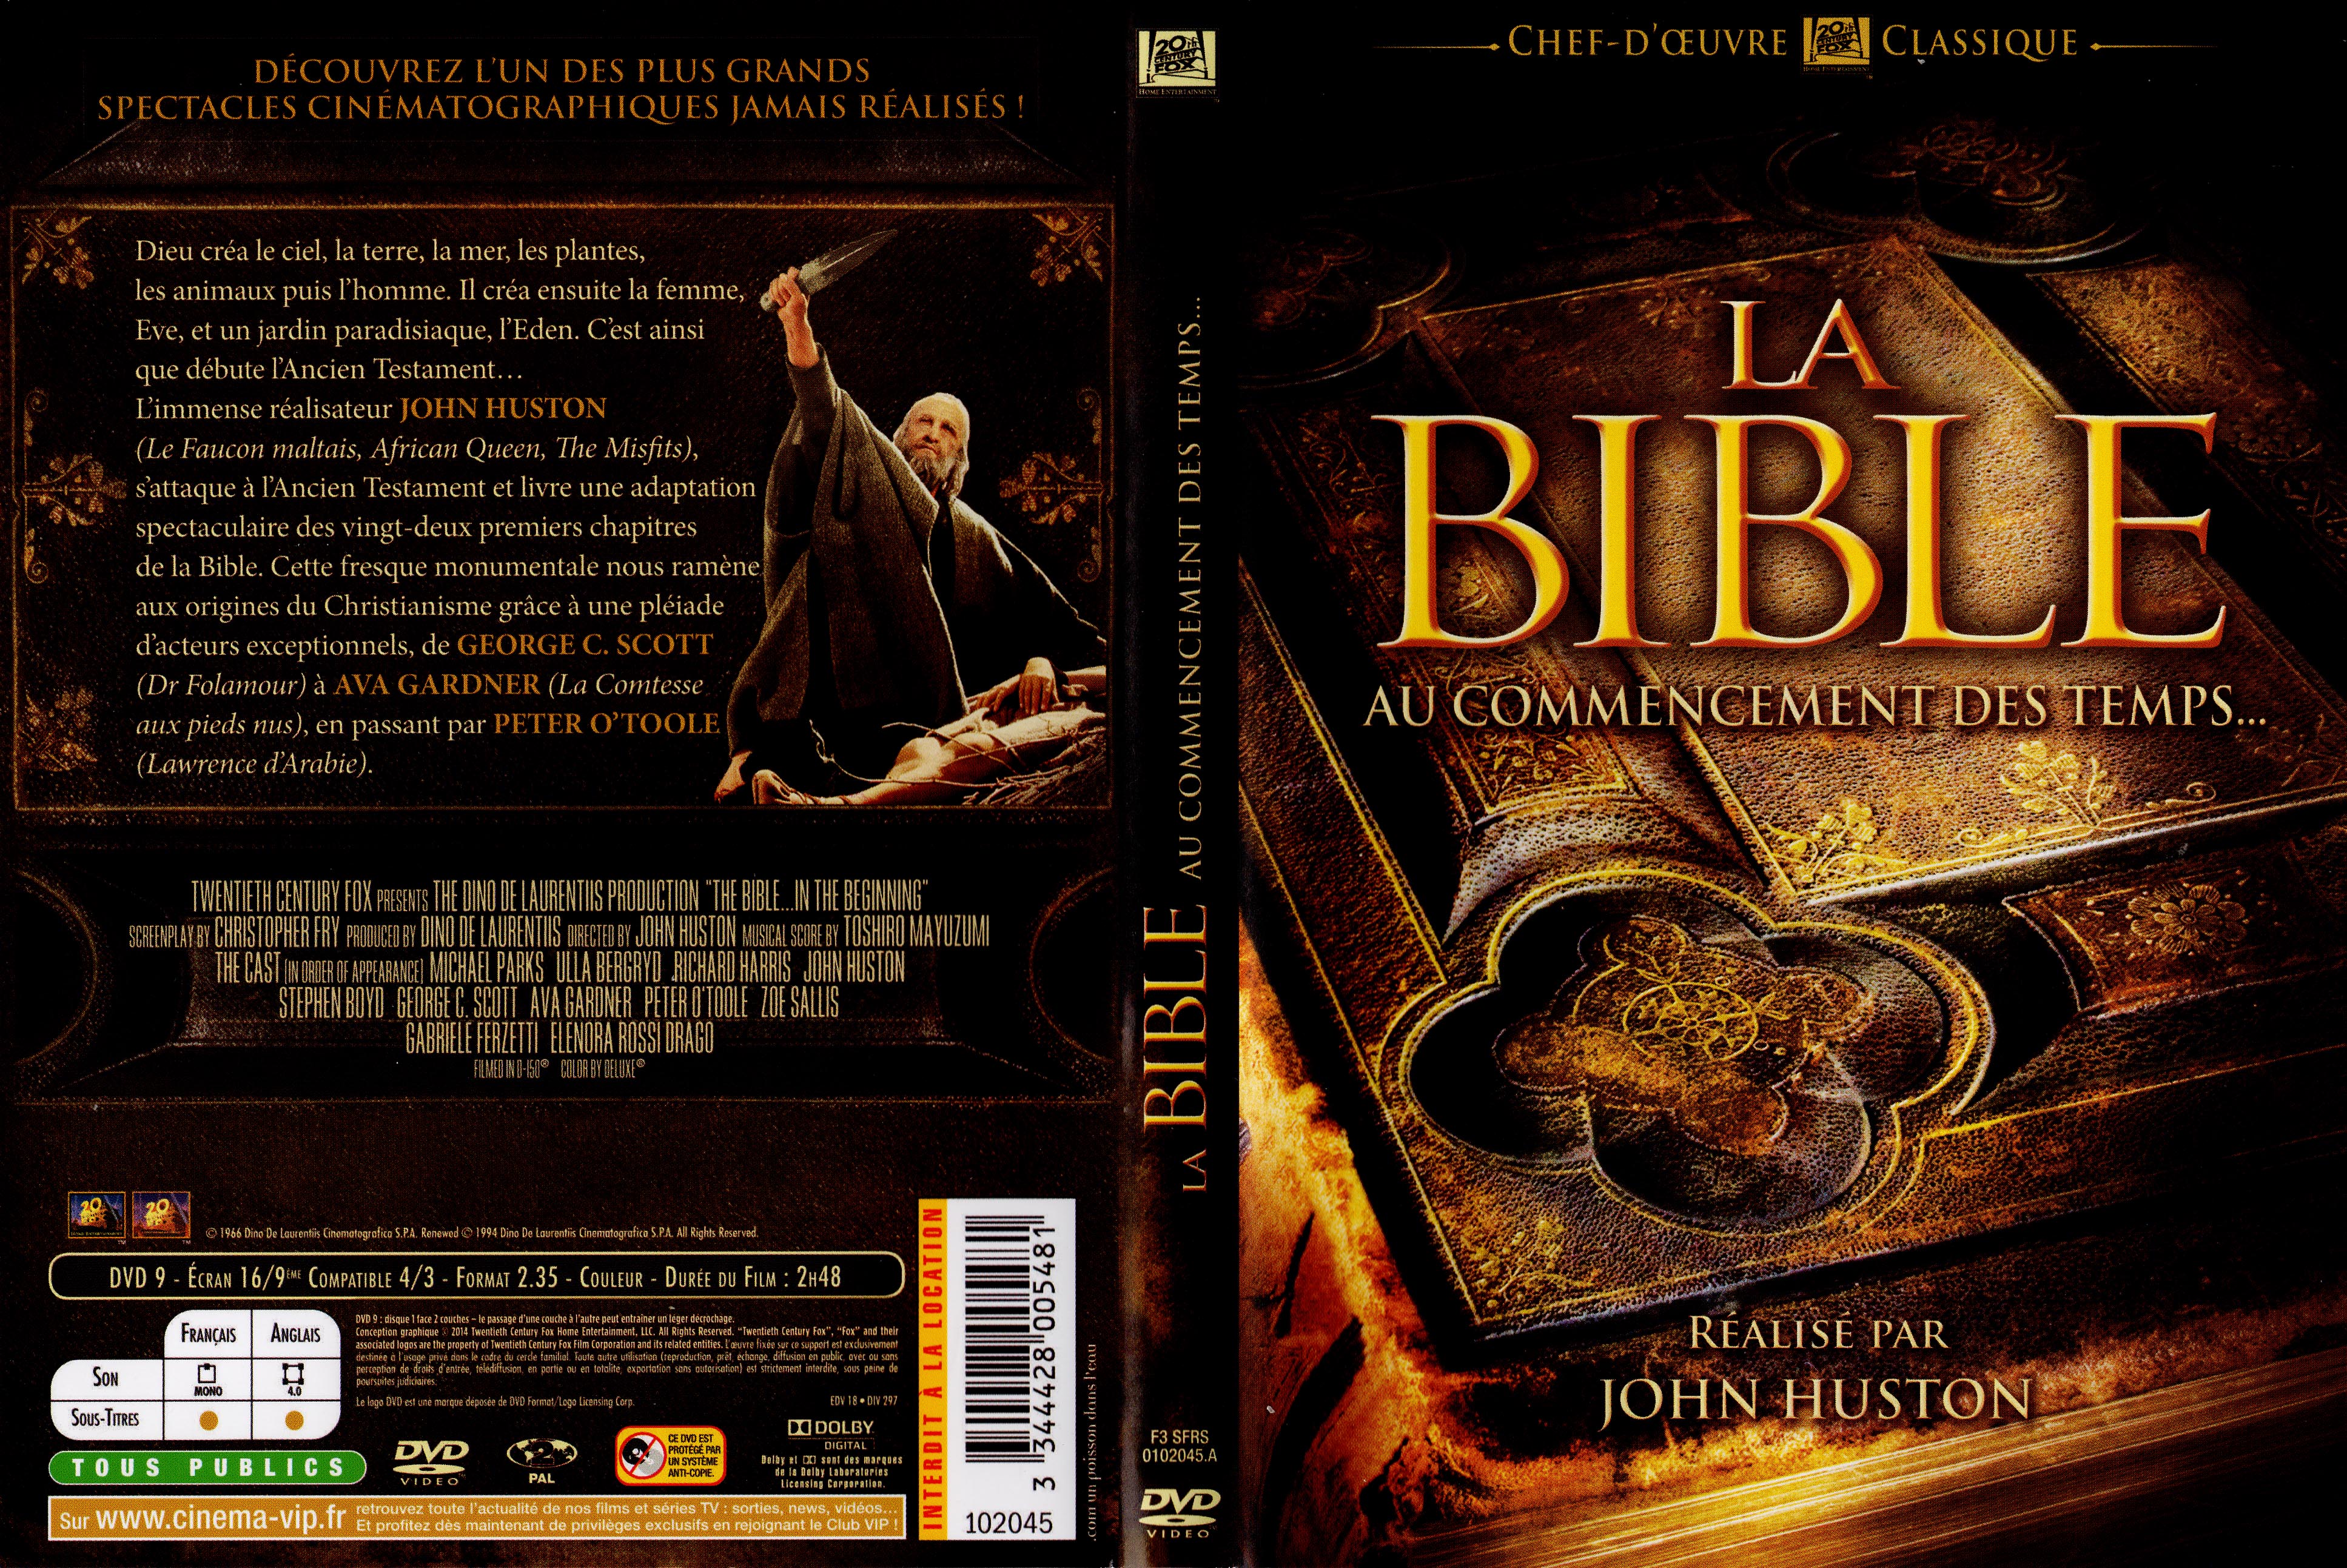 Jaquette DVD La Bible v4